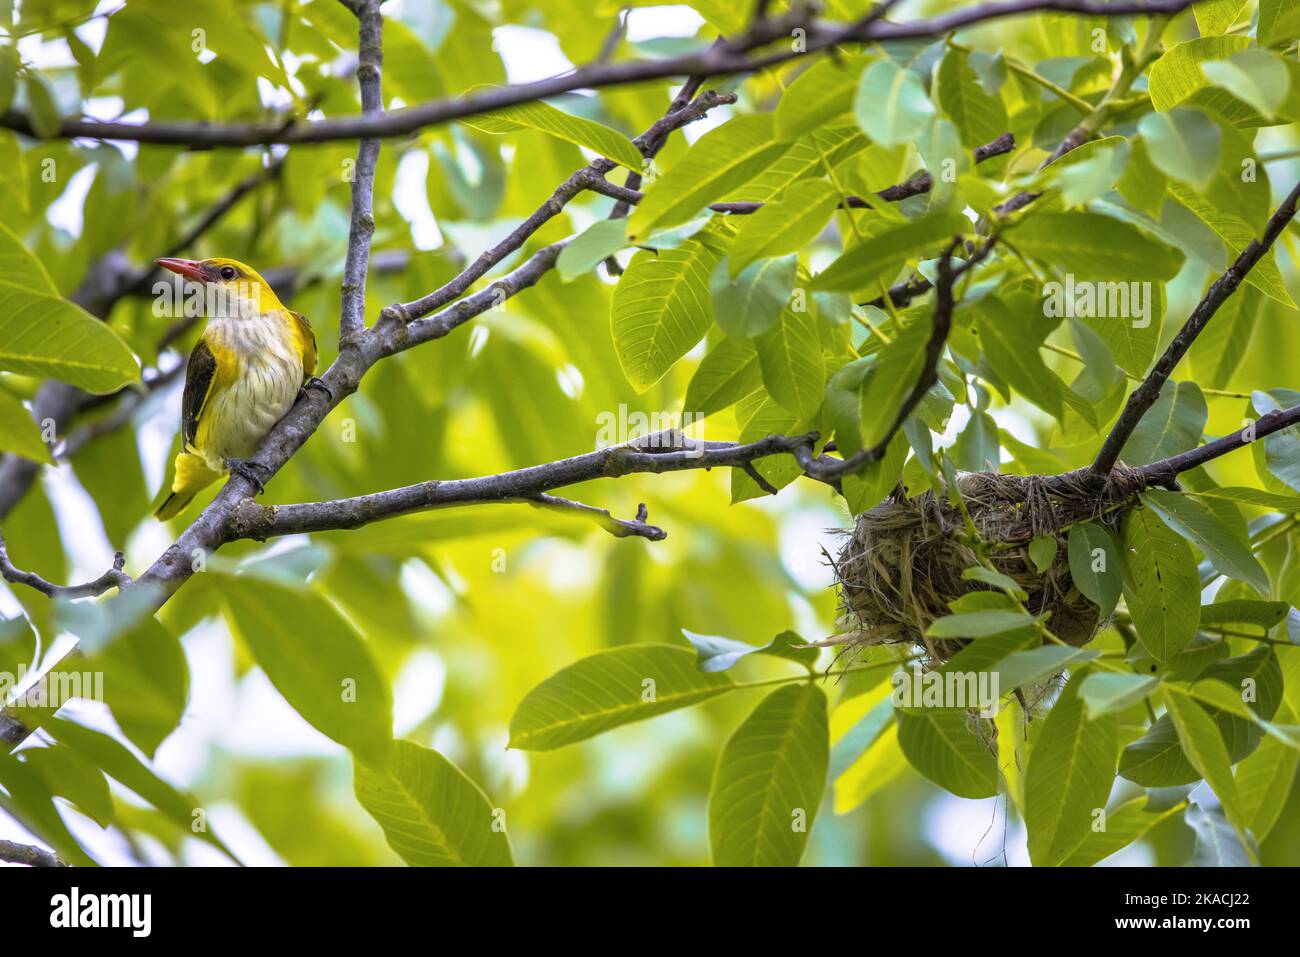 L'oriole dorée eurasienne femelle (Oriolus oriolus) est près du nid dans l'arbre à noix. Cet oiseau a son habitat de reproduction dans les zones naturelles humides d'Europe. Bulgarie.Wi Banque D'Images